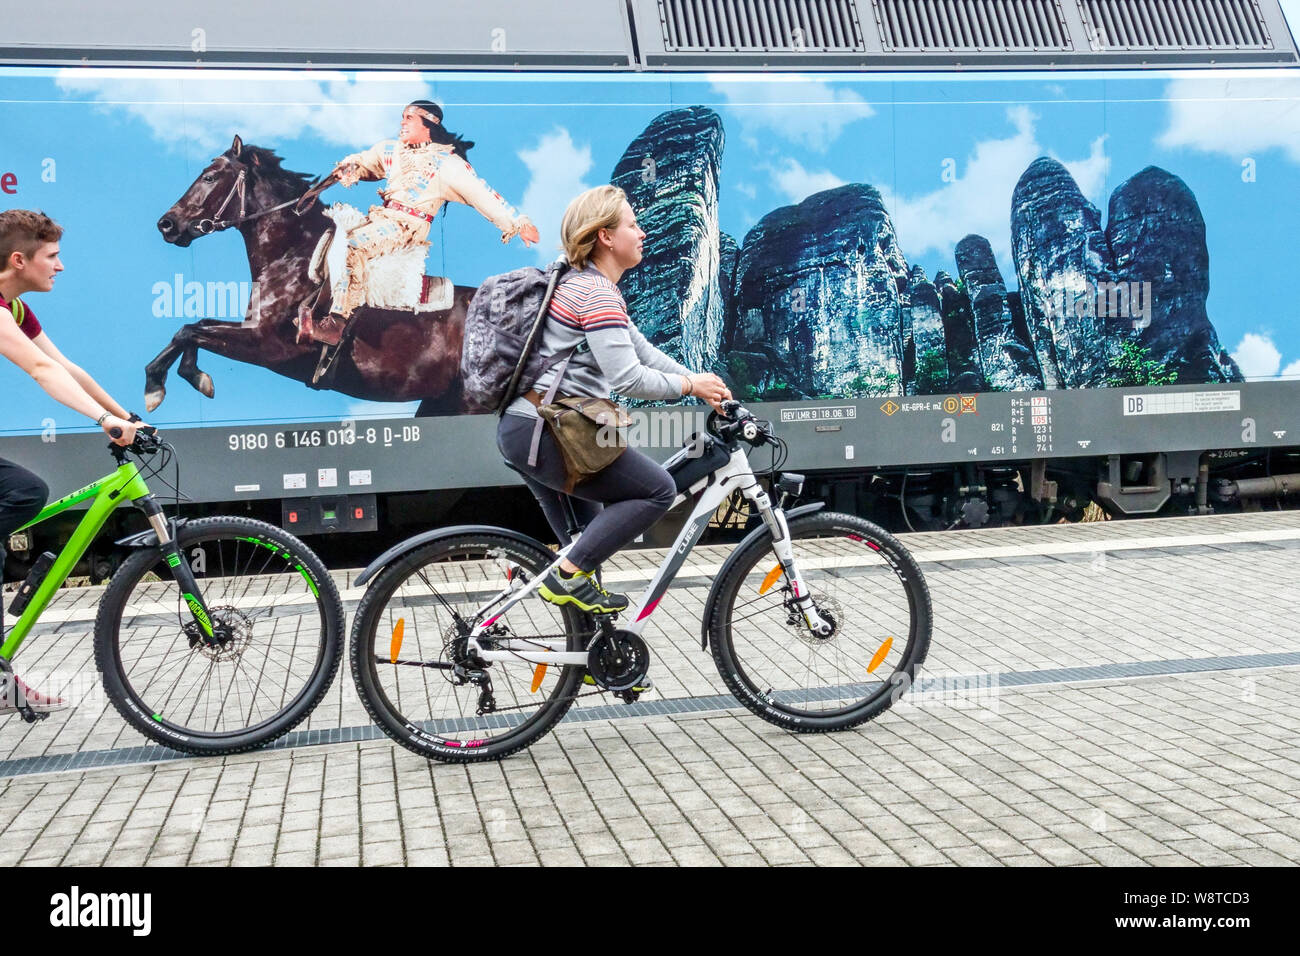 Les cyclistes allemands se promener dans la publicité du festival à Kurort Rathen. Winnetou à cheval et les falaises de grès de Bastei se font la fête des Indiens d'Allemagne Banque D'Images